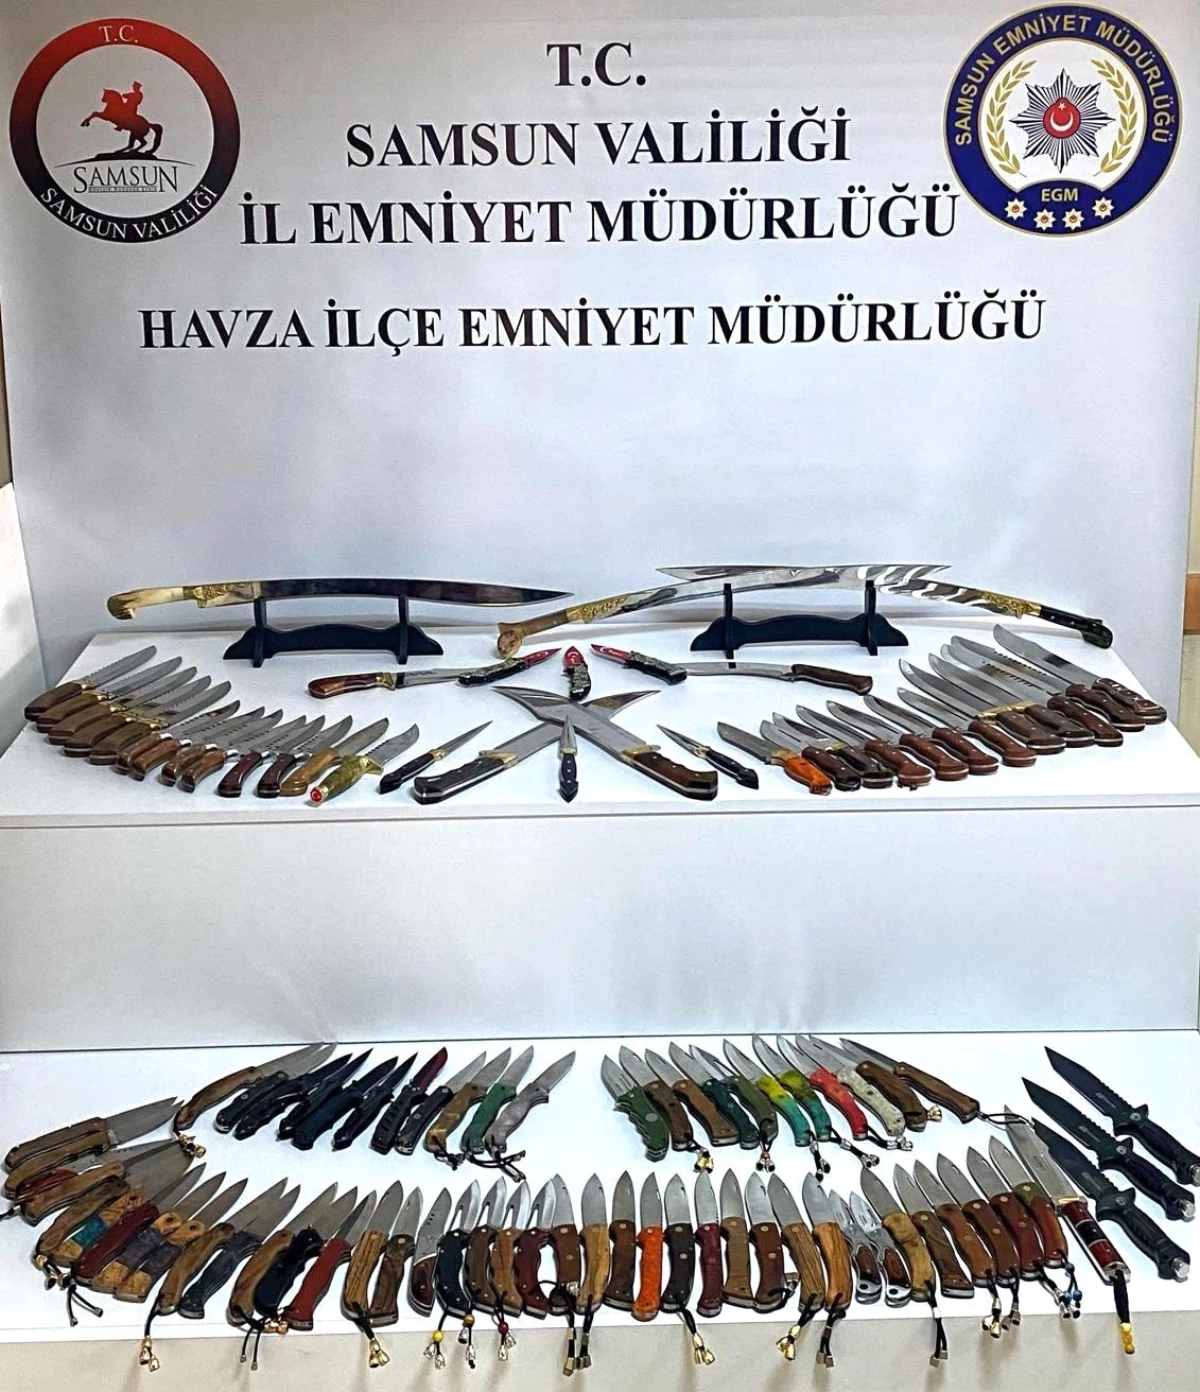 Samsun\'da internet üzerinden kesici alet satan bir kişi 102 adet kesici aletle yakalandı